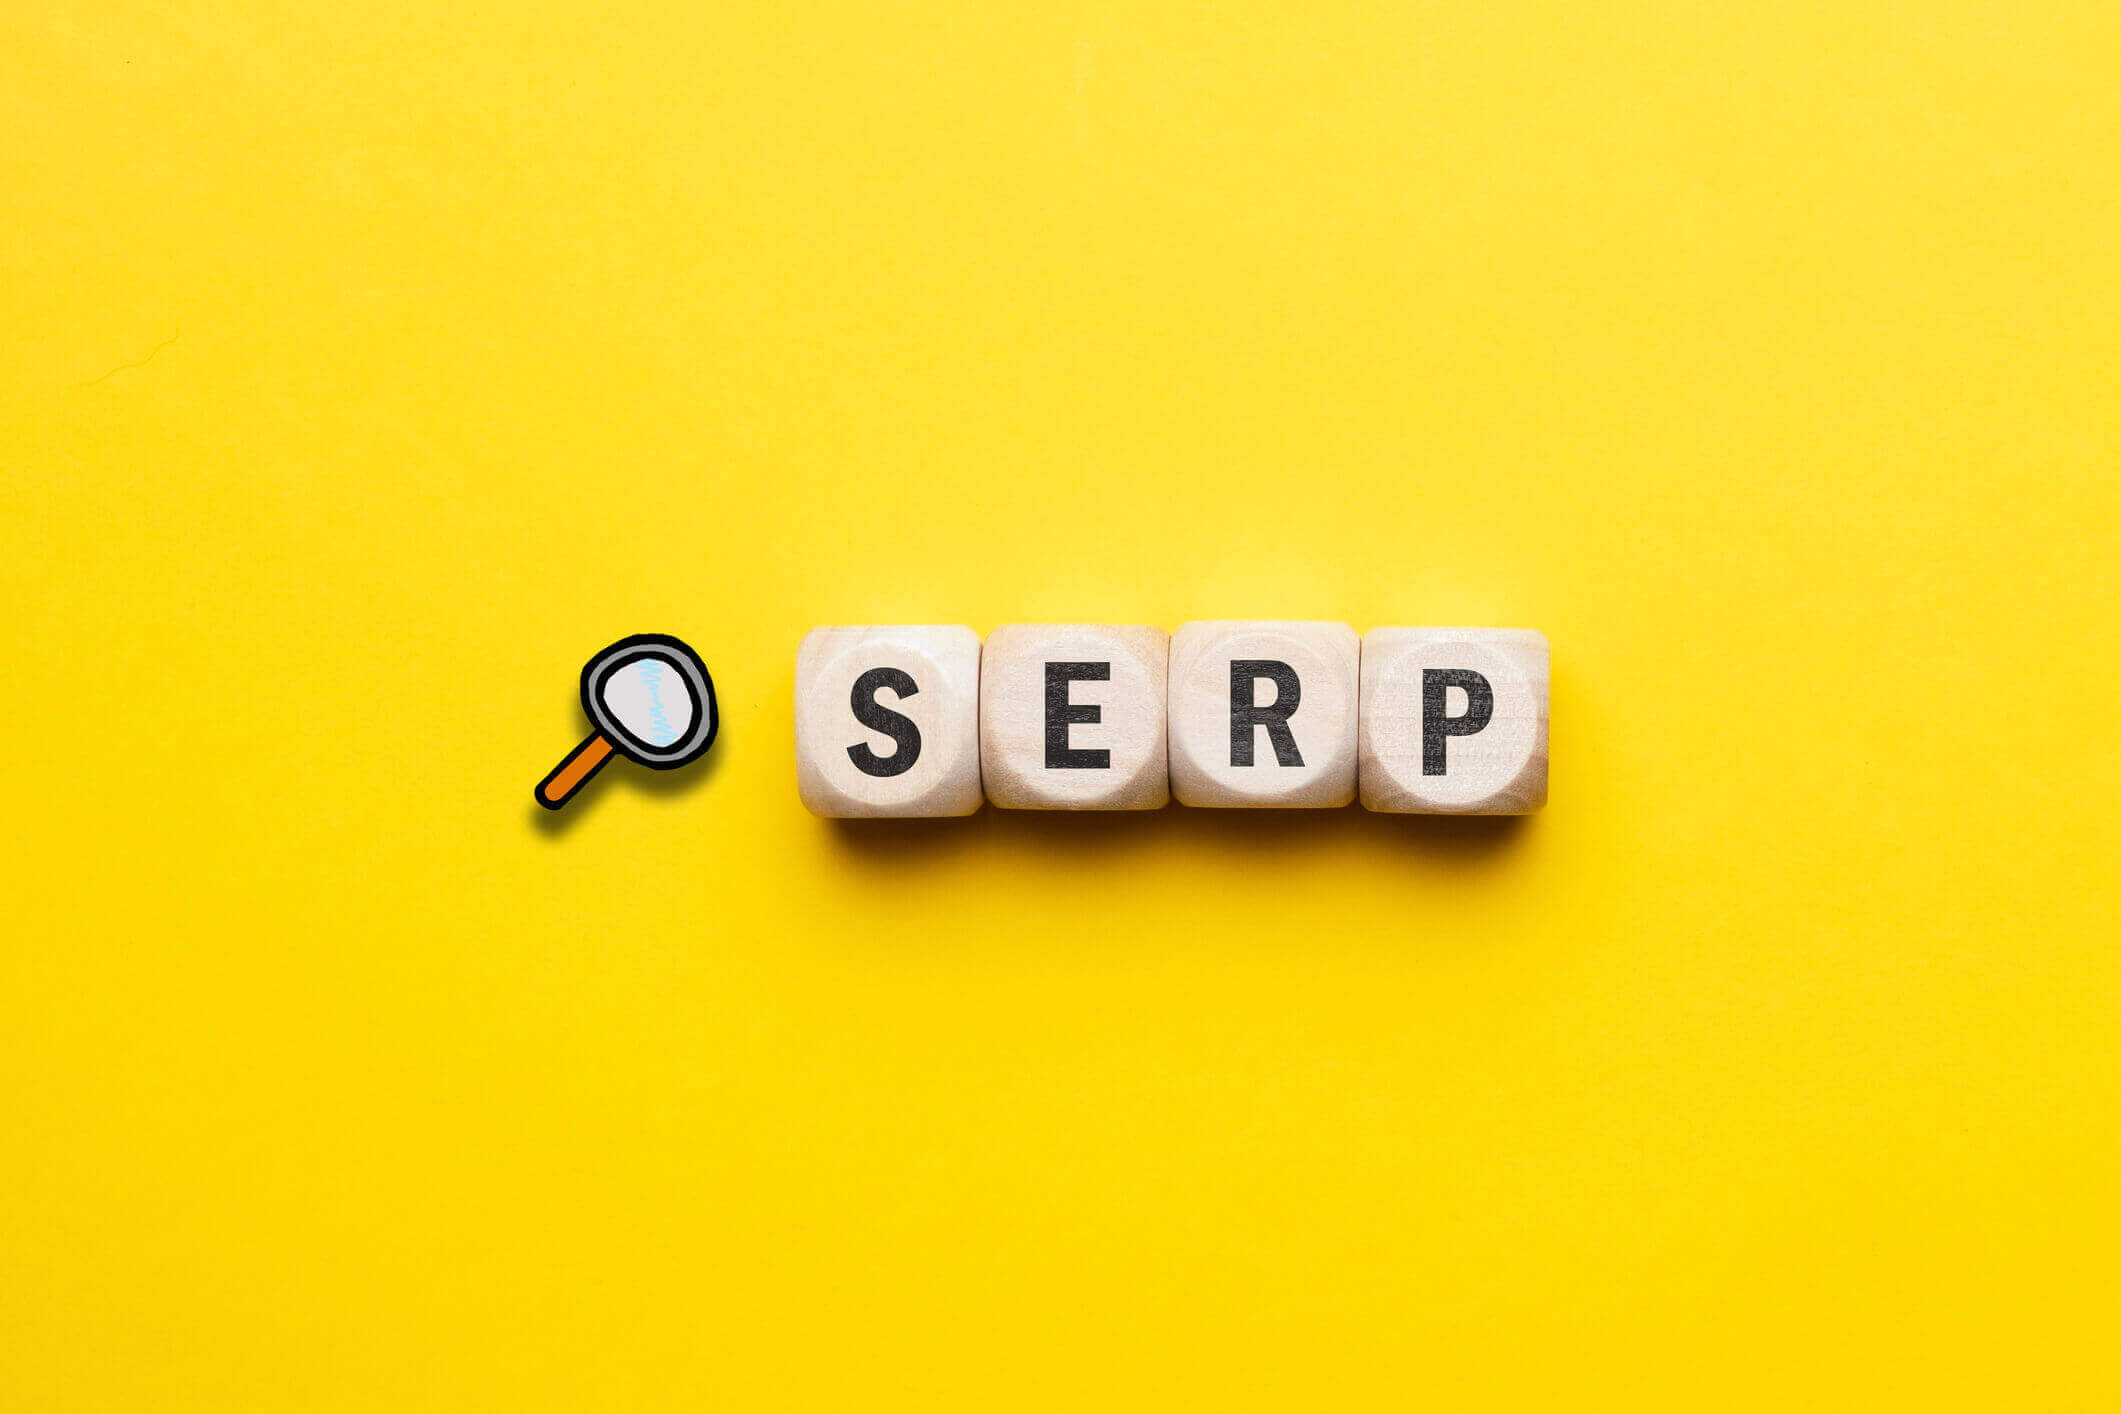 Google SERP: So sind die Suchergebnisseiten aufgebaut